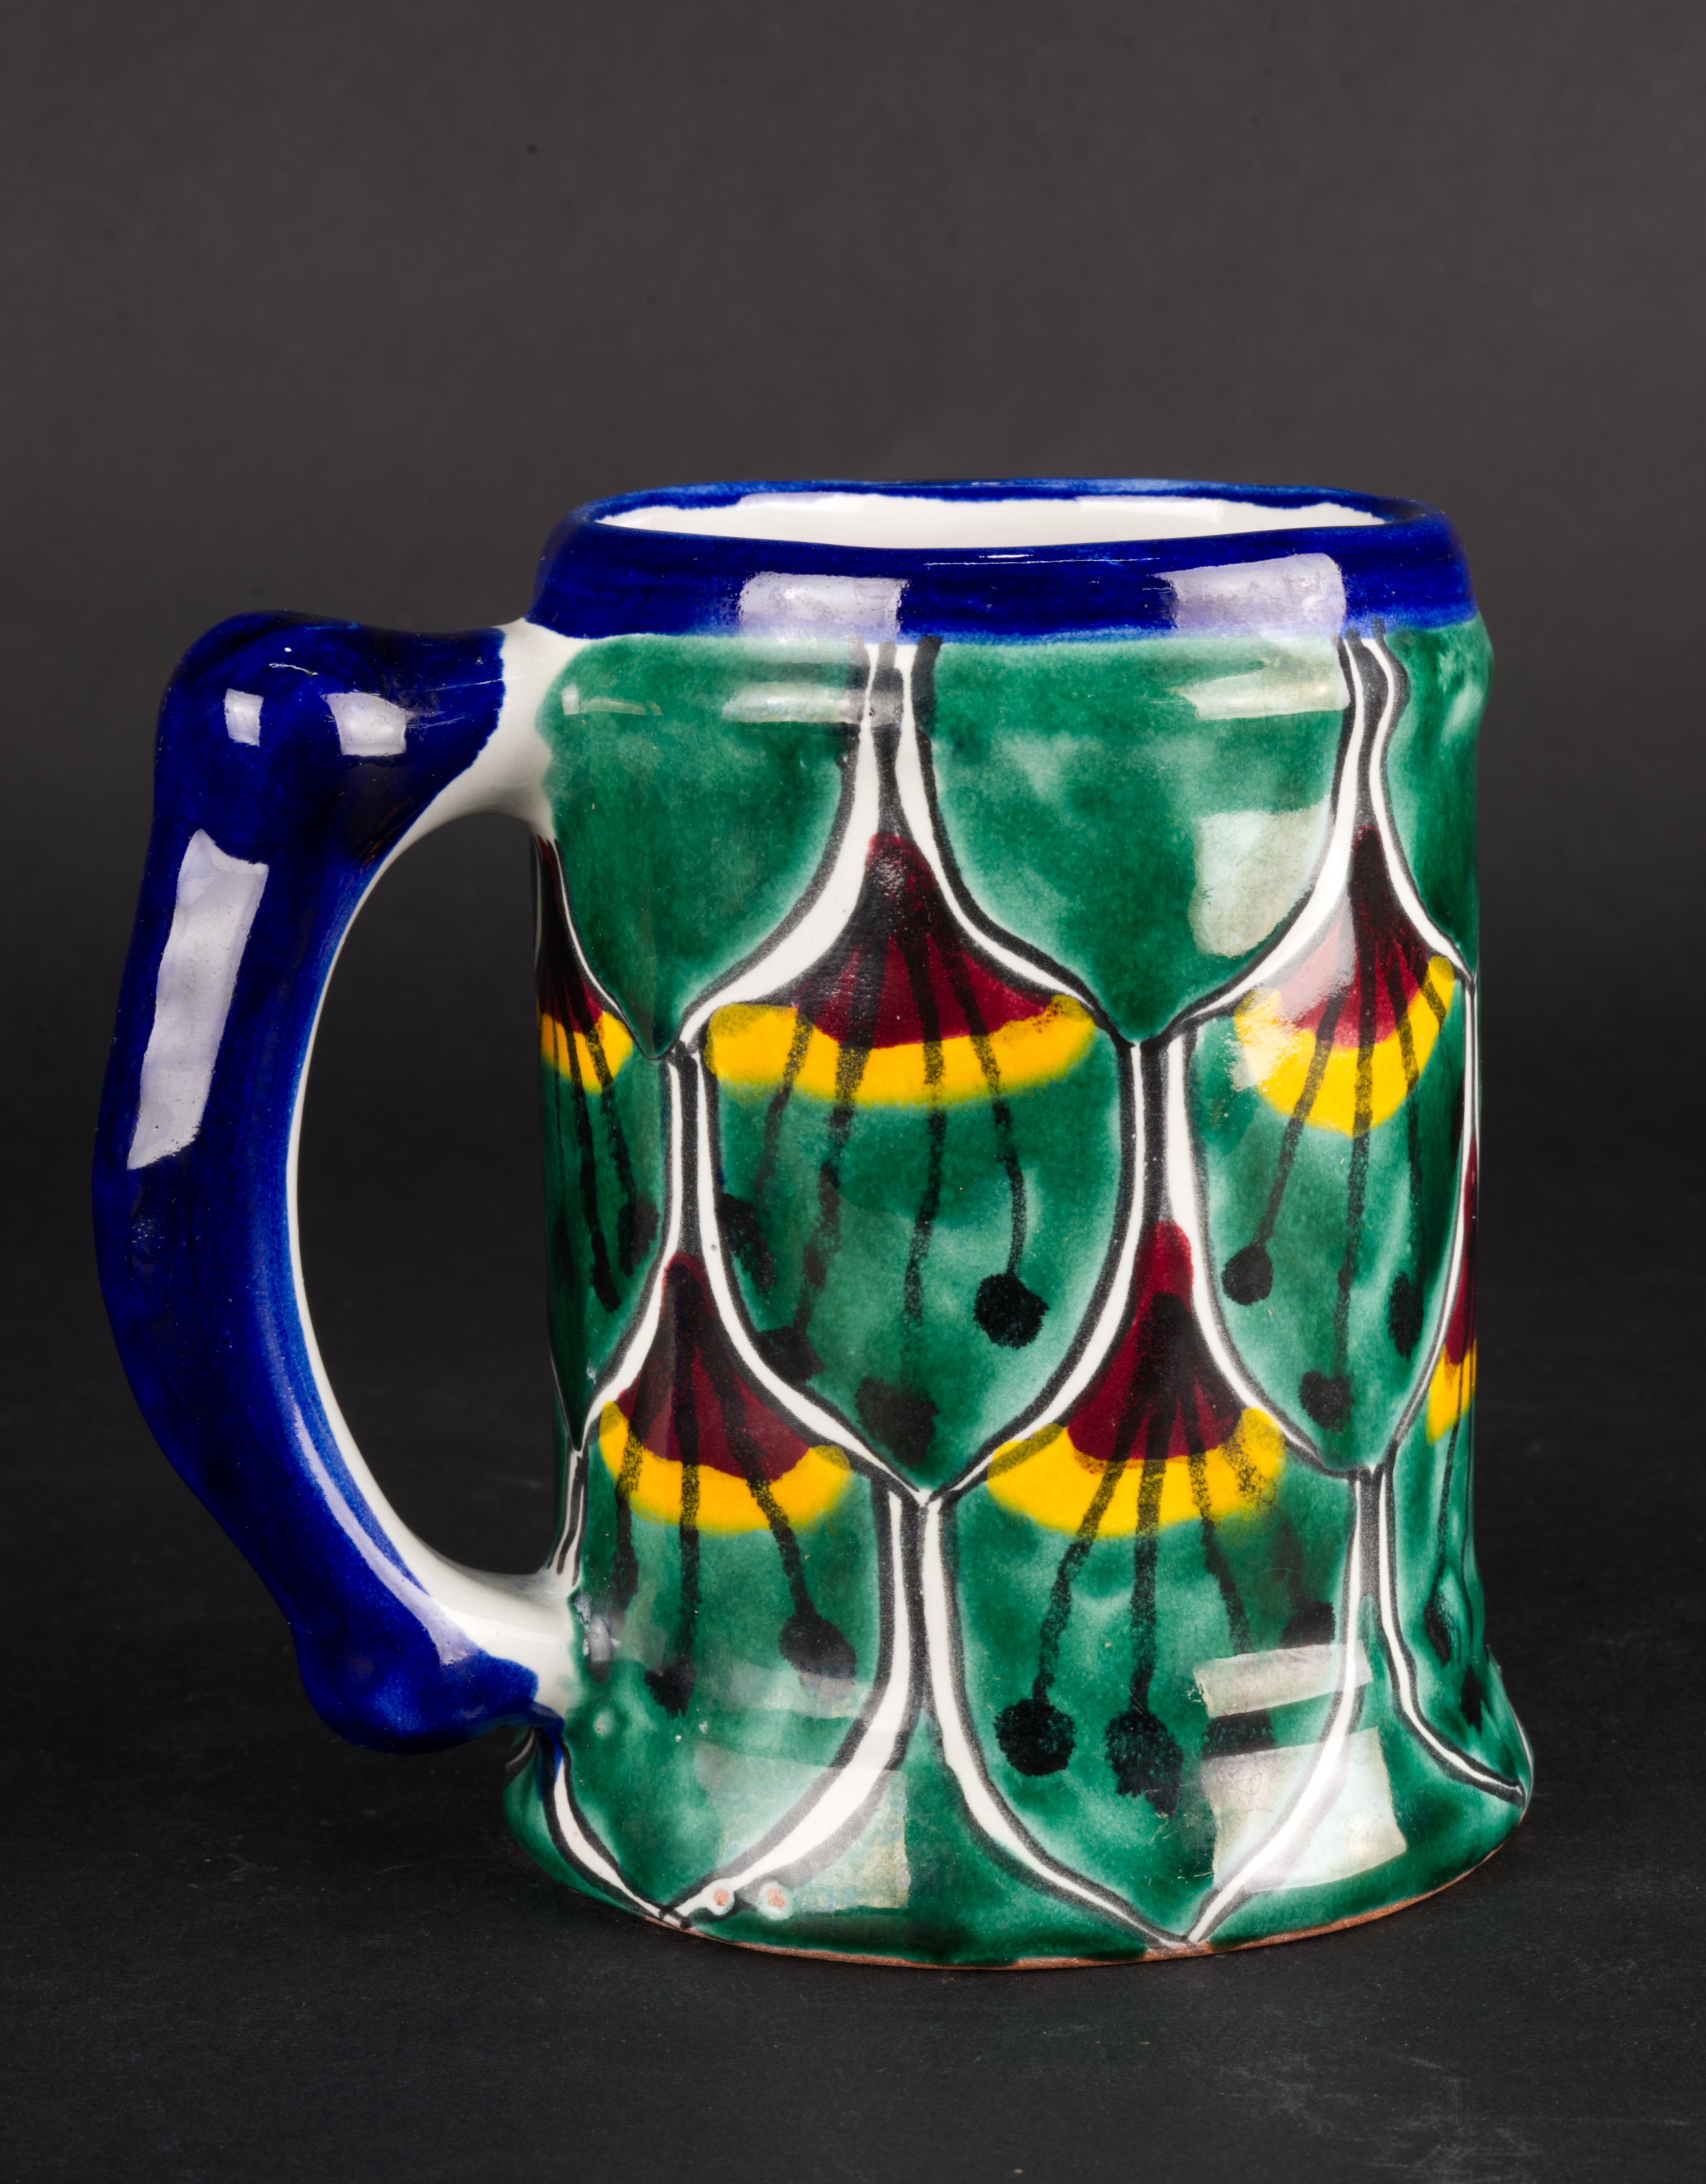 
Ce mug ou stein vintage surdimensionné a été fabriqué à la main par des artisans de Talavera, au Mexique. La tasse est décorée du traditionnel motif du paon en vert et bleu profonds avec des accents rouge foncé et orange vif ; l'anse et le bord